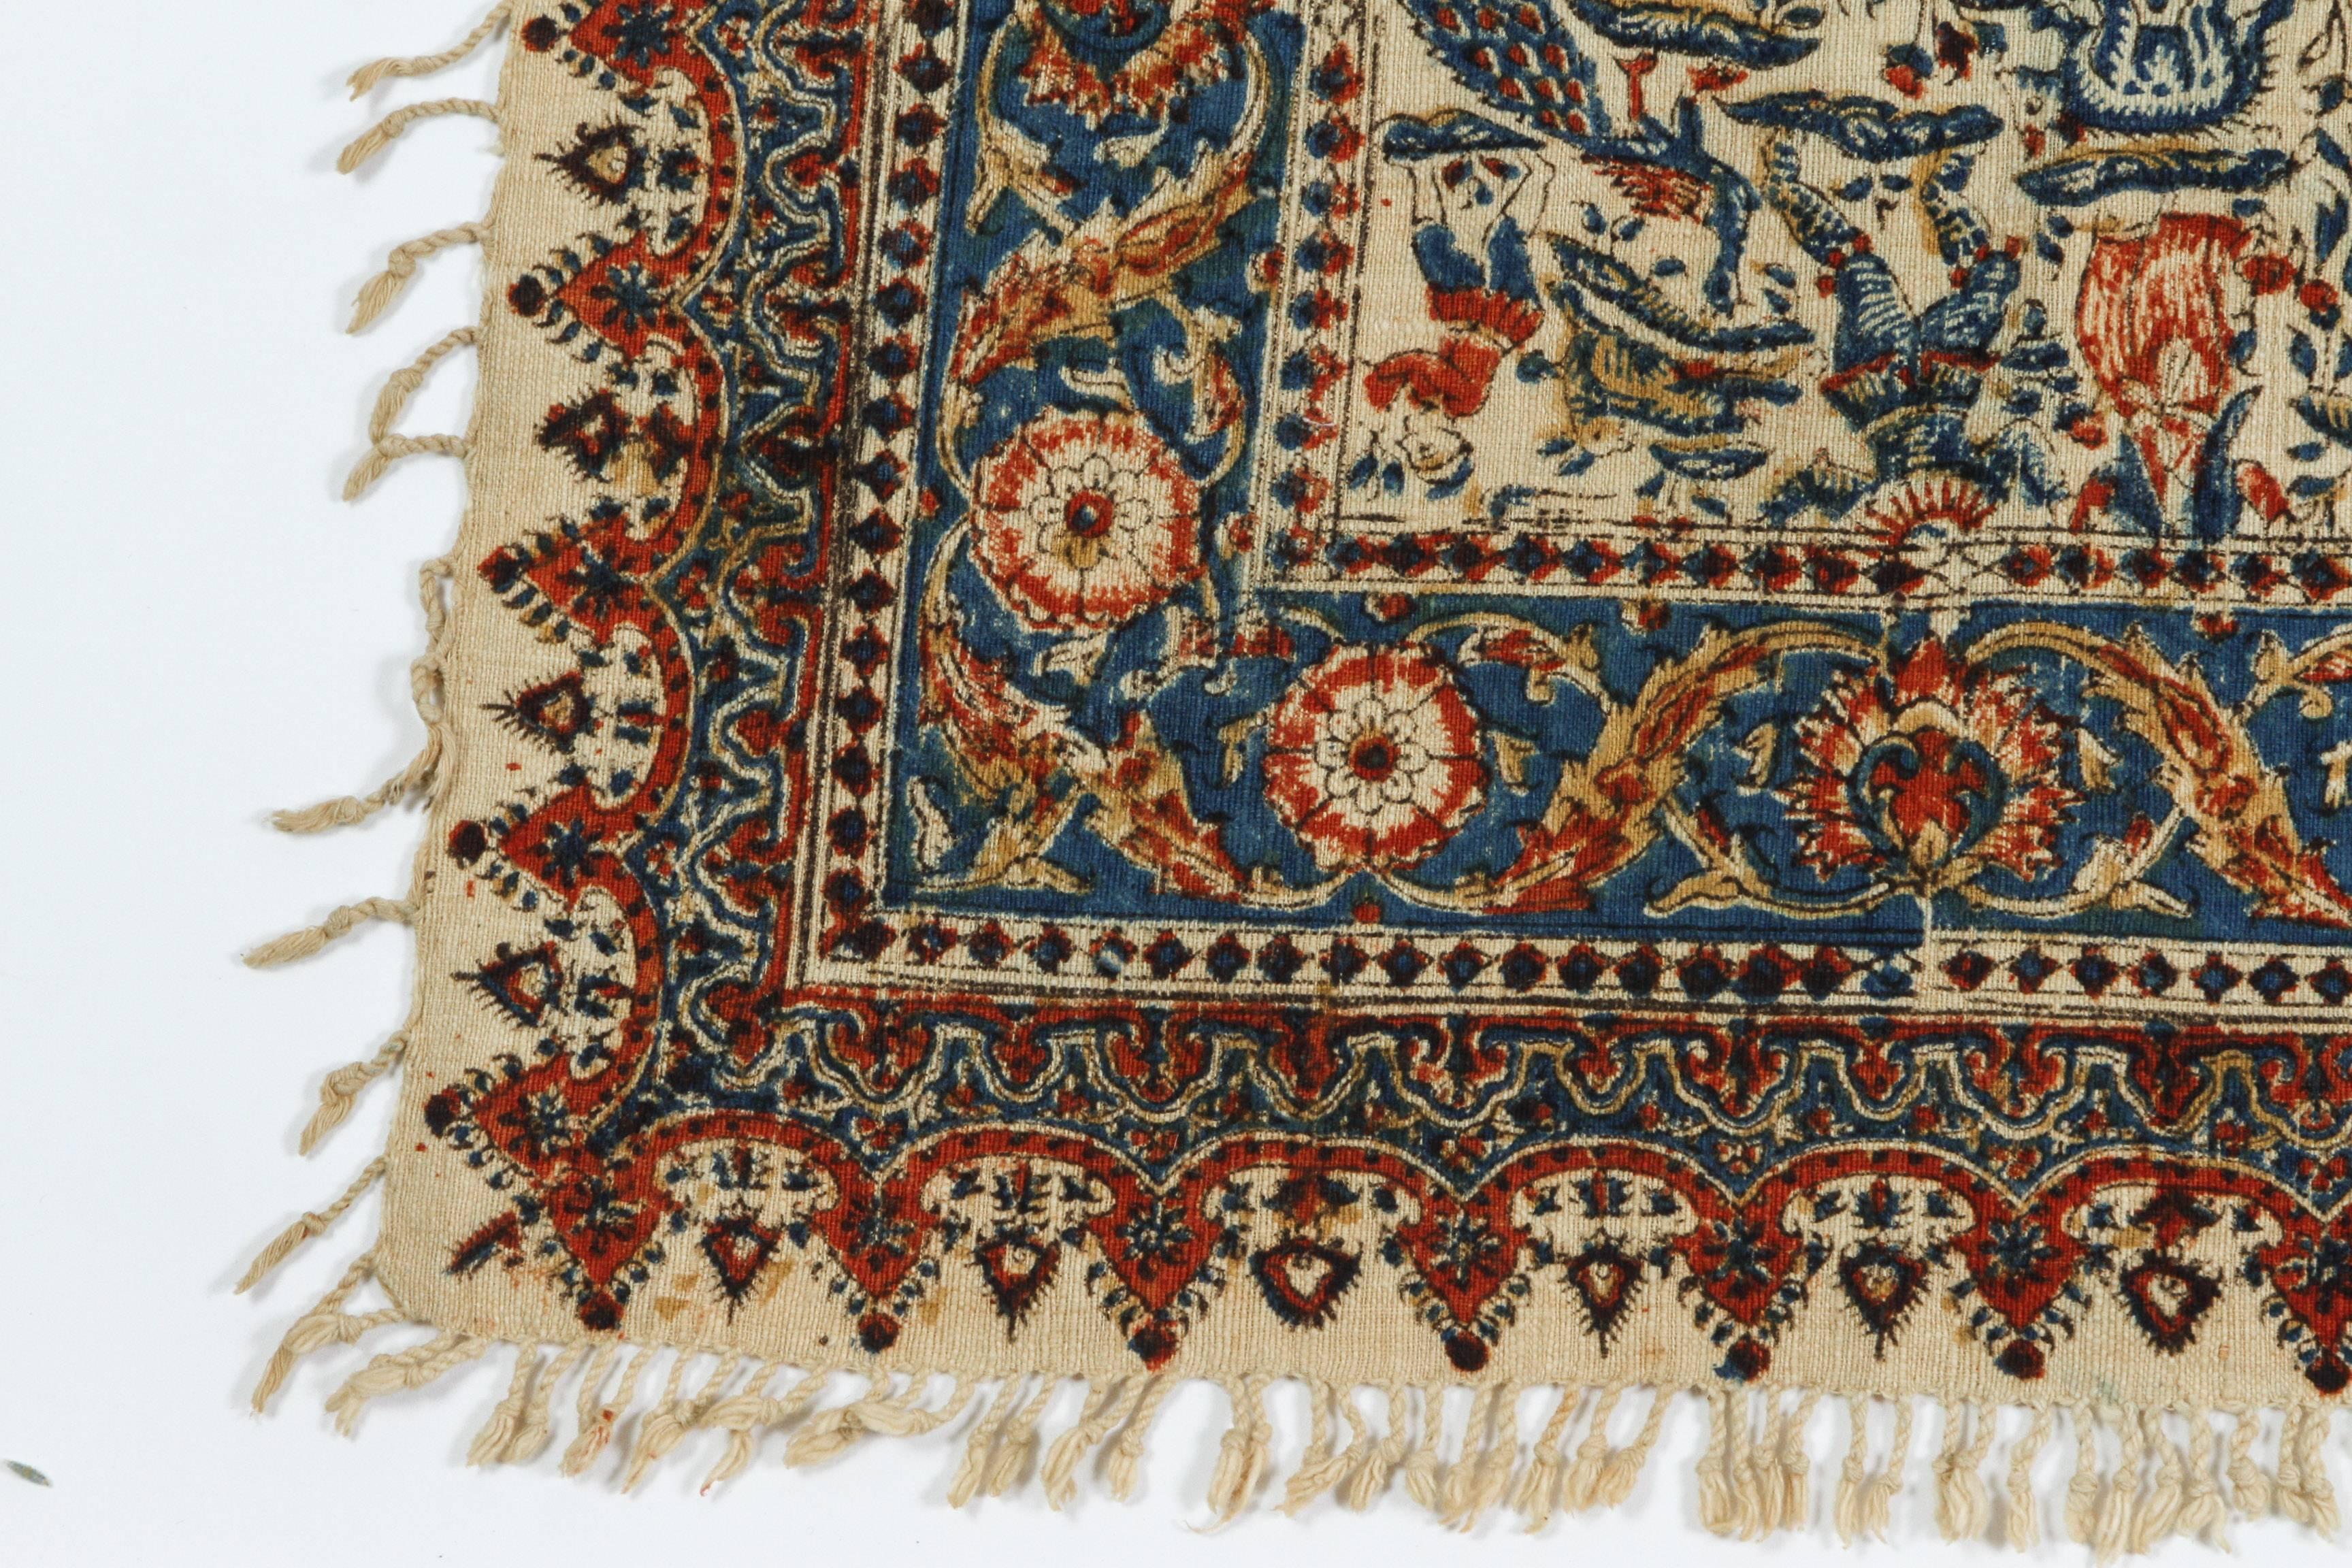 Islamic Persian Paisley Kalamkari Textile